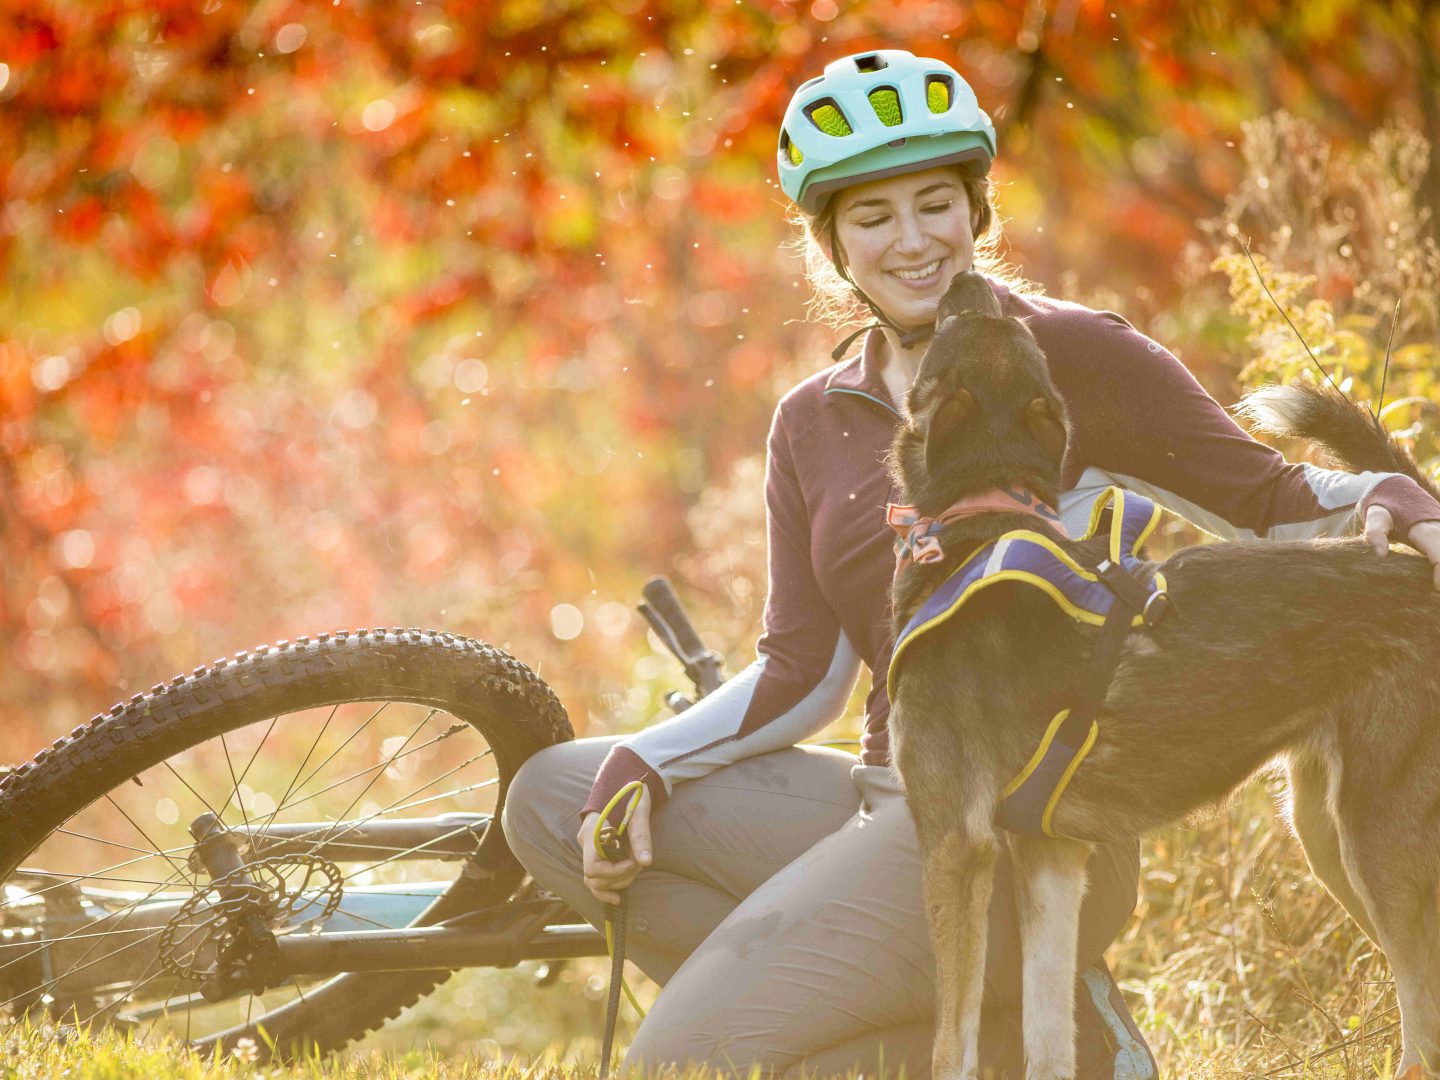 Blair Braverman mit einem ihrer Hunde im Herbstlaub.